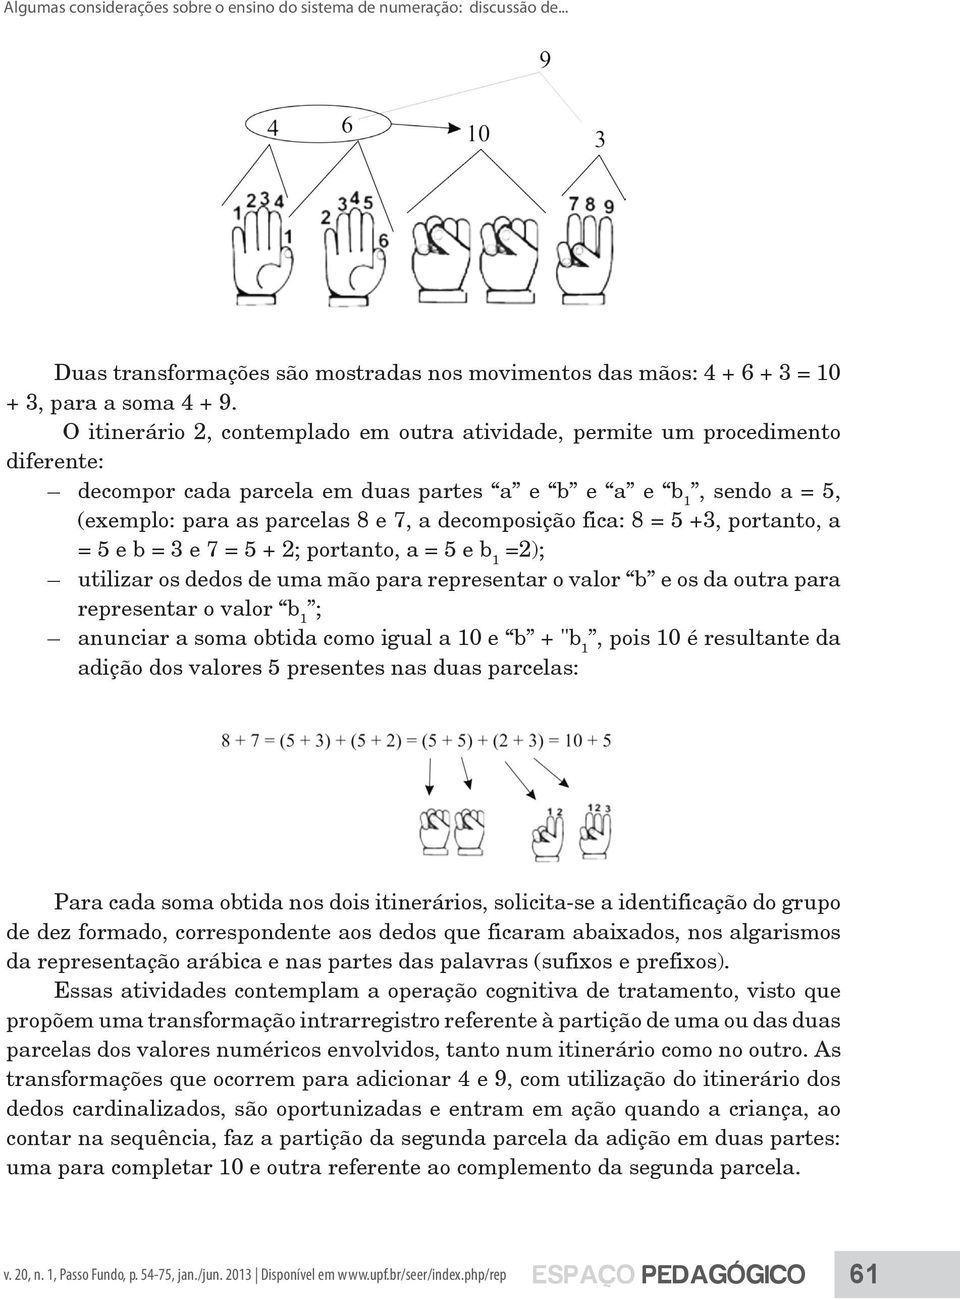 fica: 8 = 5 +3, portanto, a = 5 e b = 3 e 7 = 5 + 2; portanto, a = 5 e b 1 =2); utilizar os dedos de uma mão para representar o valor b e os da outra para representar o valor b 1 ; anunciar a soma